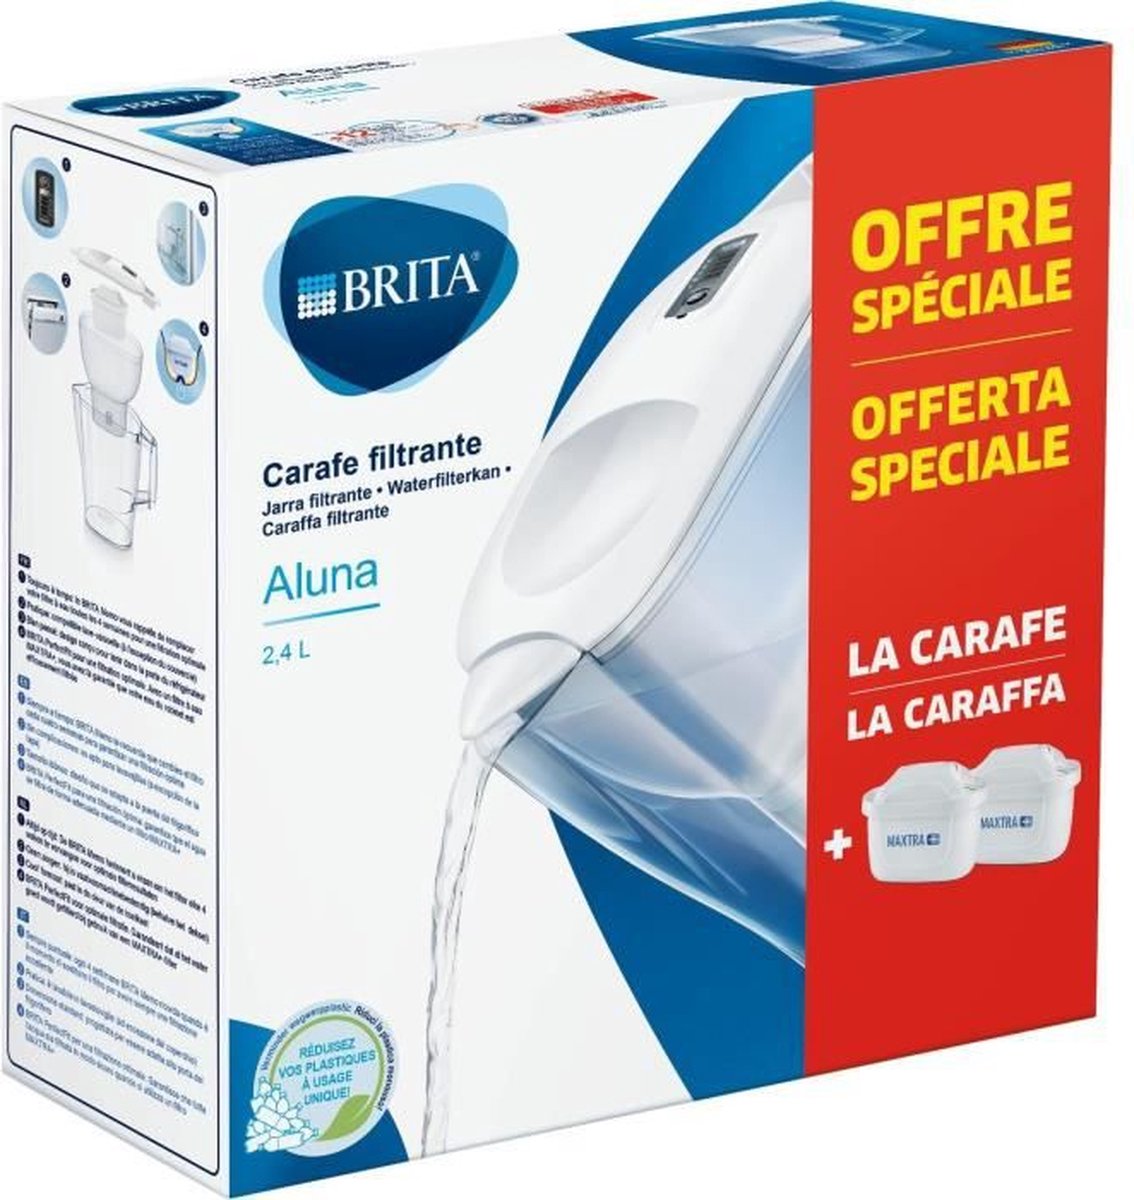 Brita Carafe Filter Aluna Blanche + 2 MaxTra + Cartridges inbegrepen |  bol.com